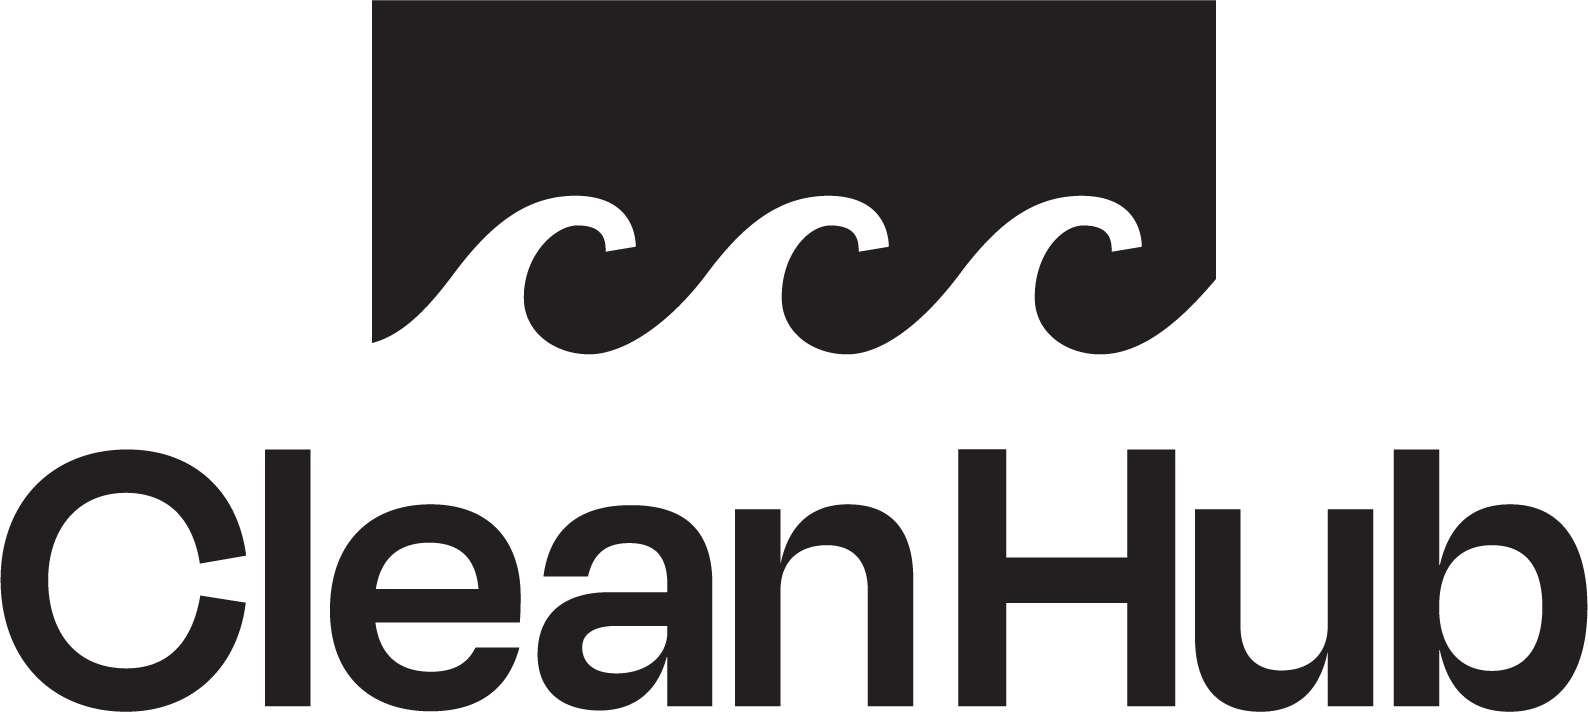 Cleanhub_logo